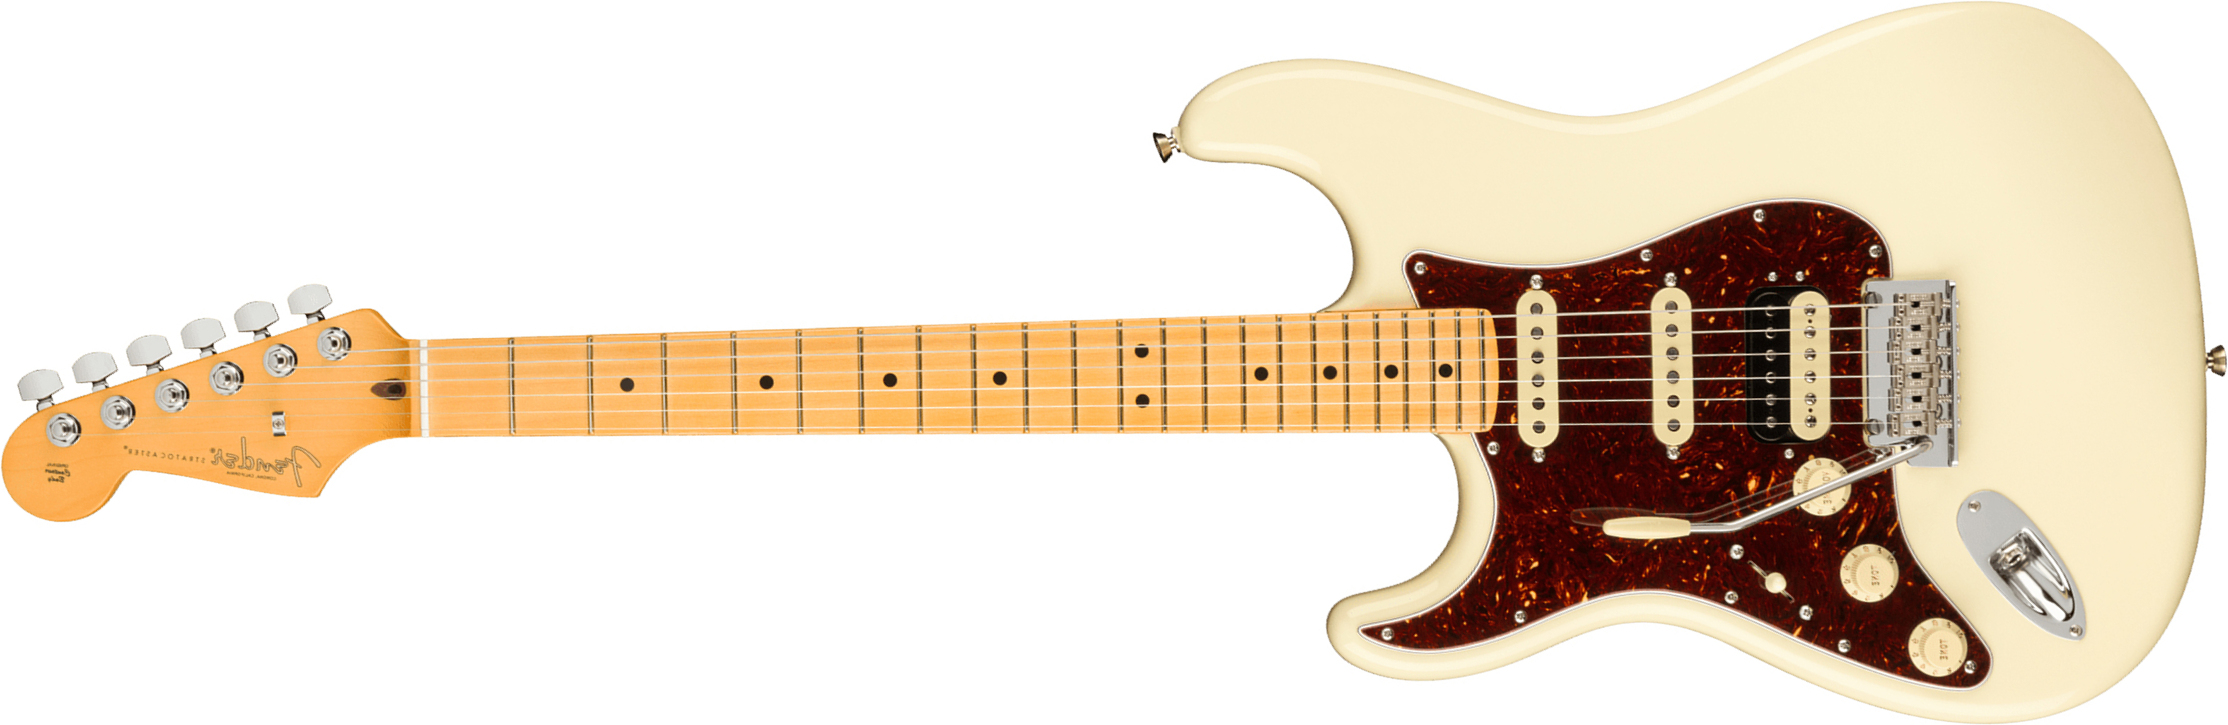 Fender Strat American Professional Ii Lh Gaucher Usa Mn - Olympic White - E-Gitarre für Linkshänder - Main picture